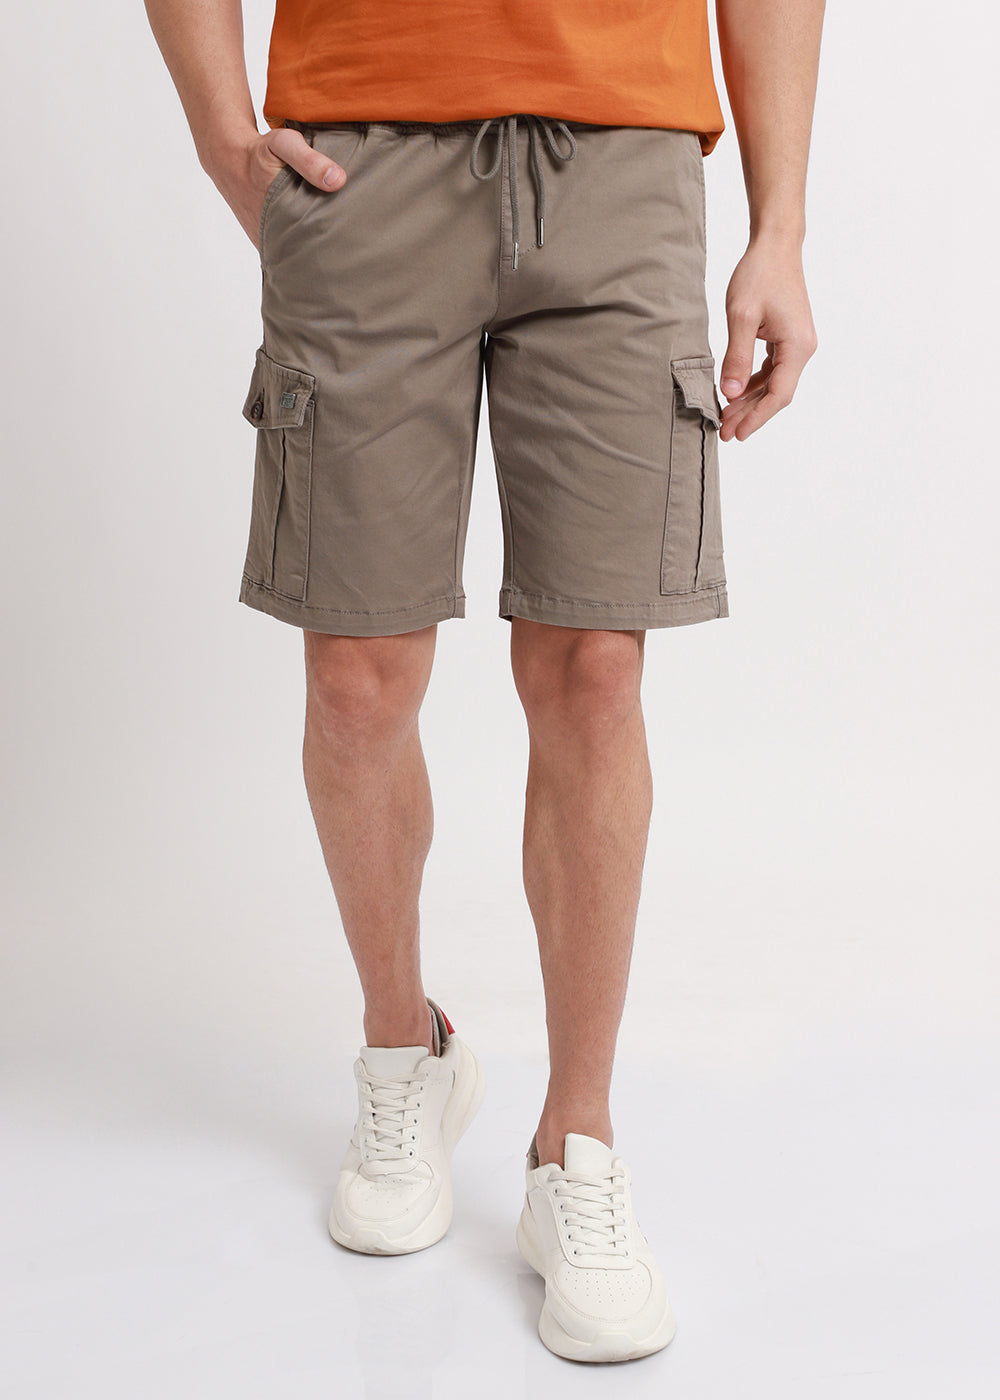 Shop Brown Cotton Cargo shorts